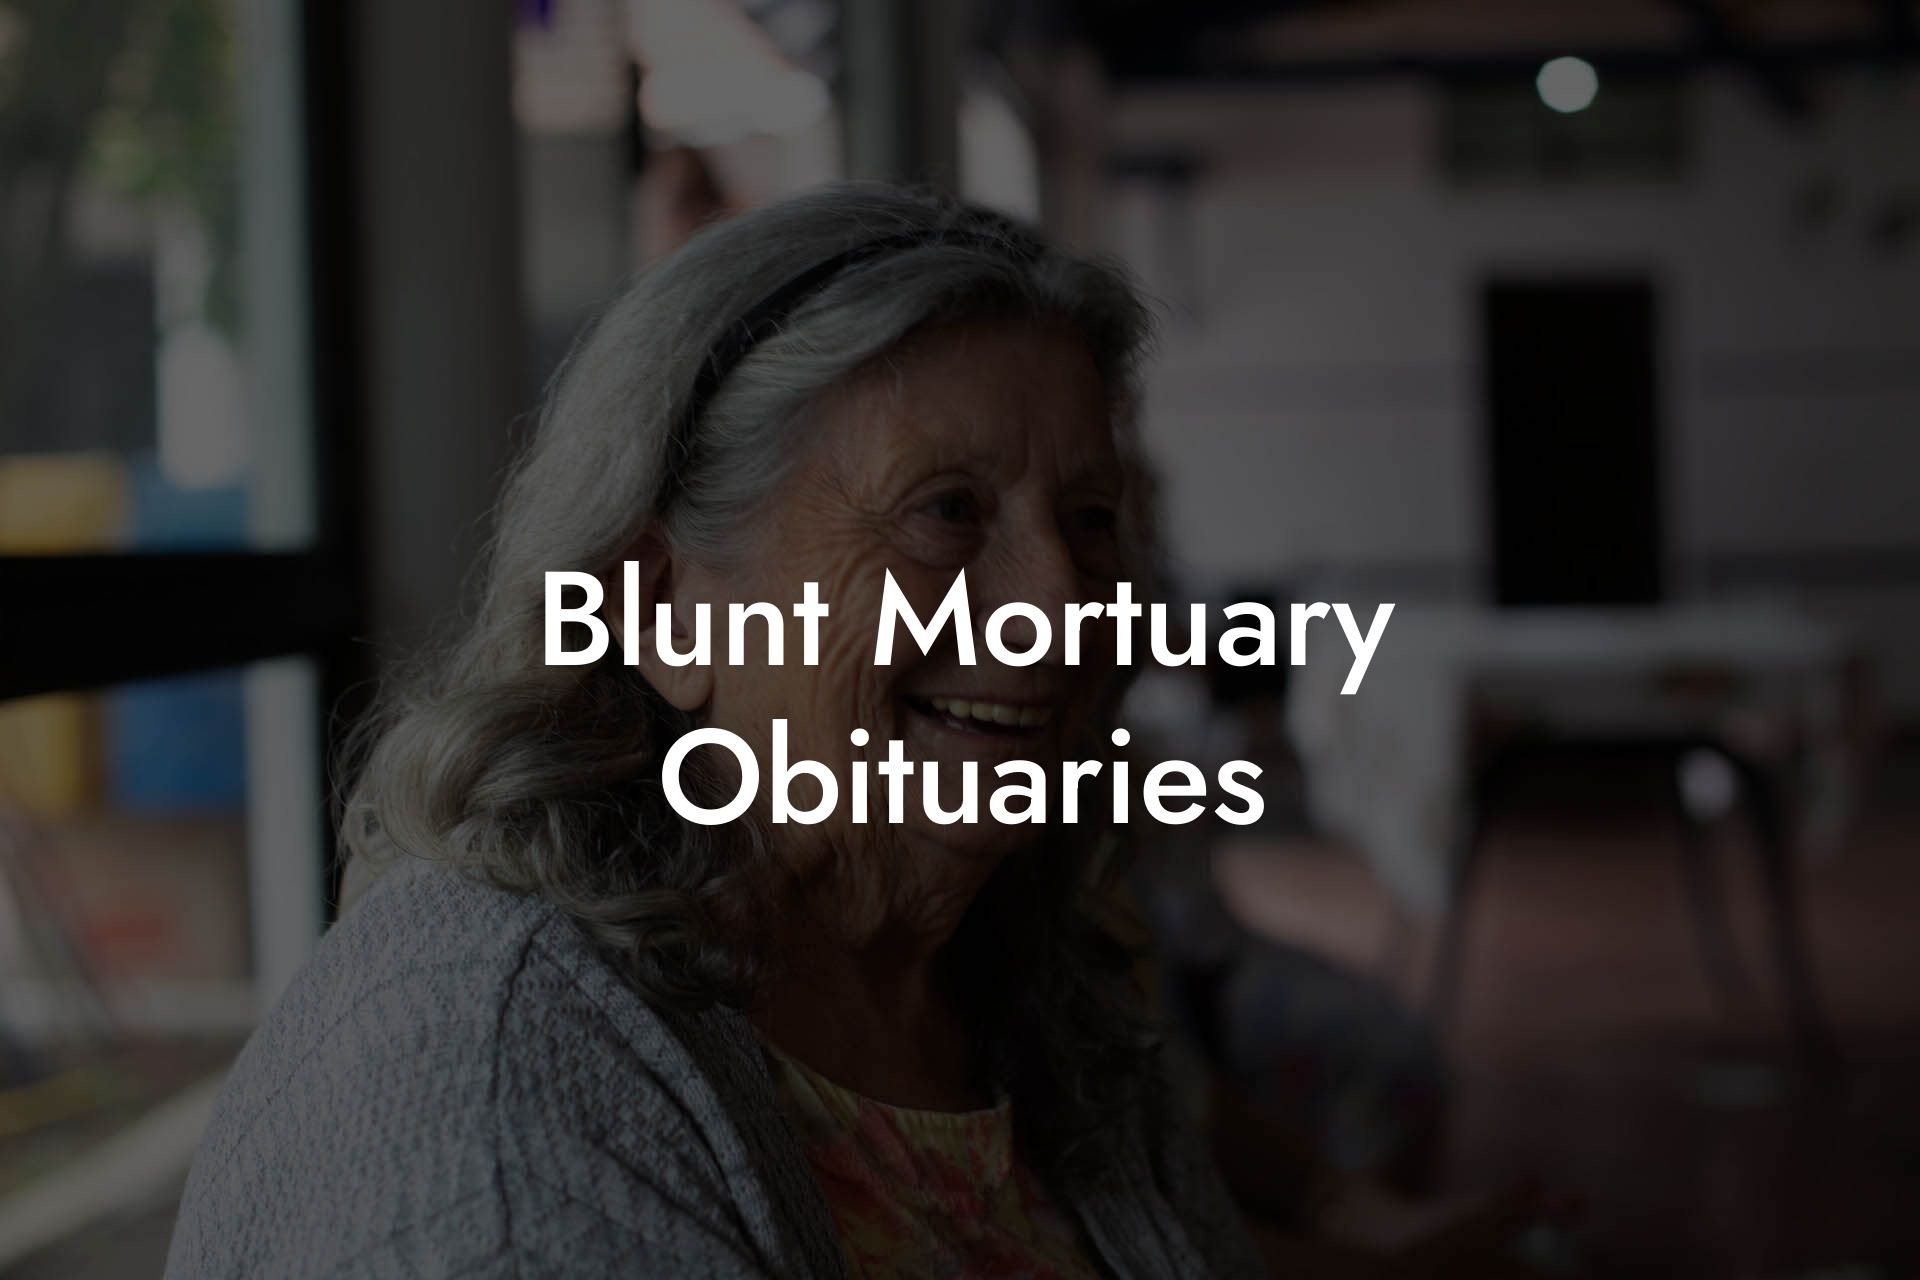 Blunt Mortuary Obituaries